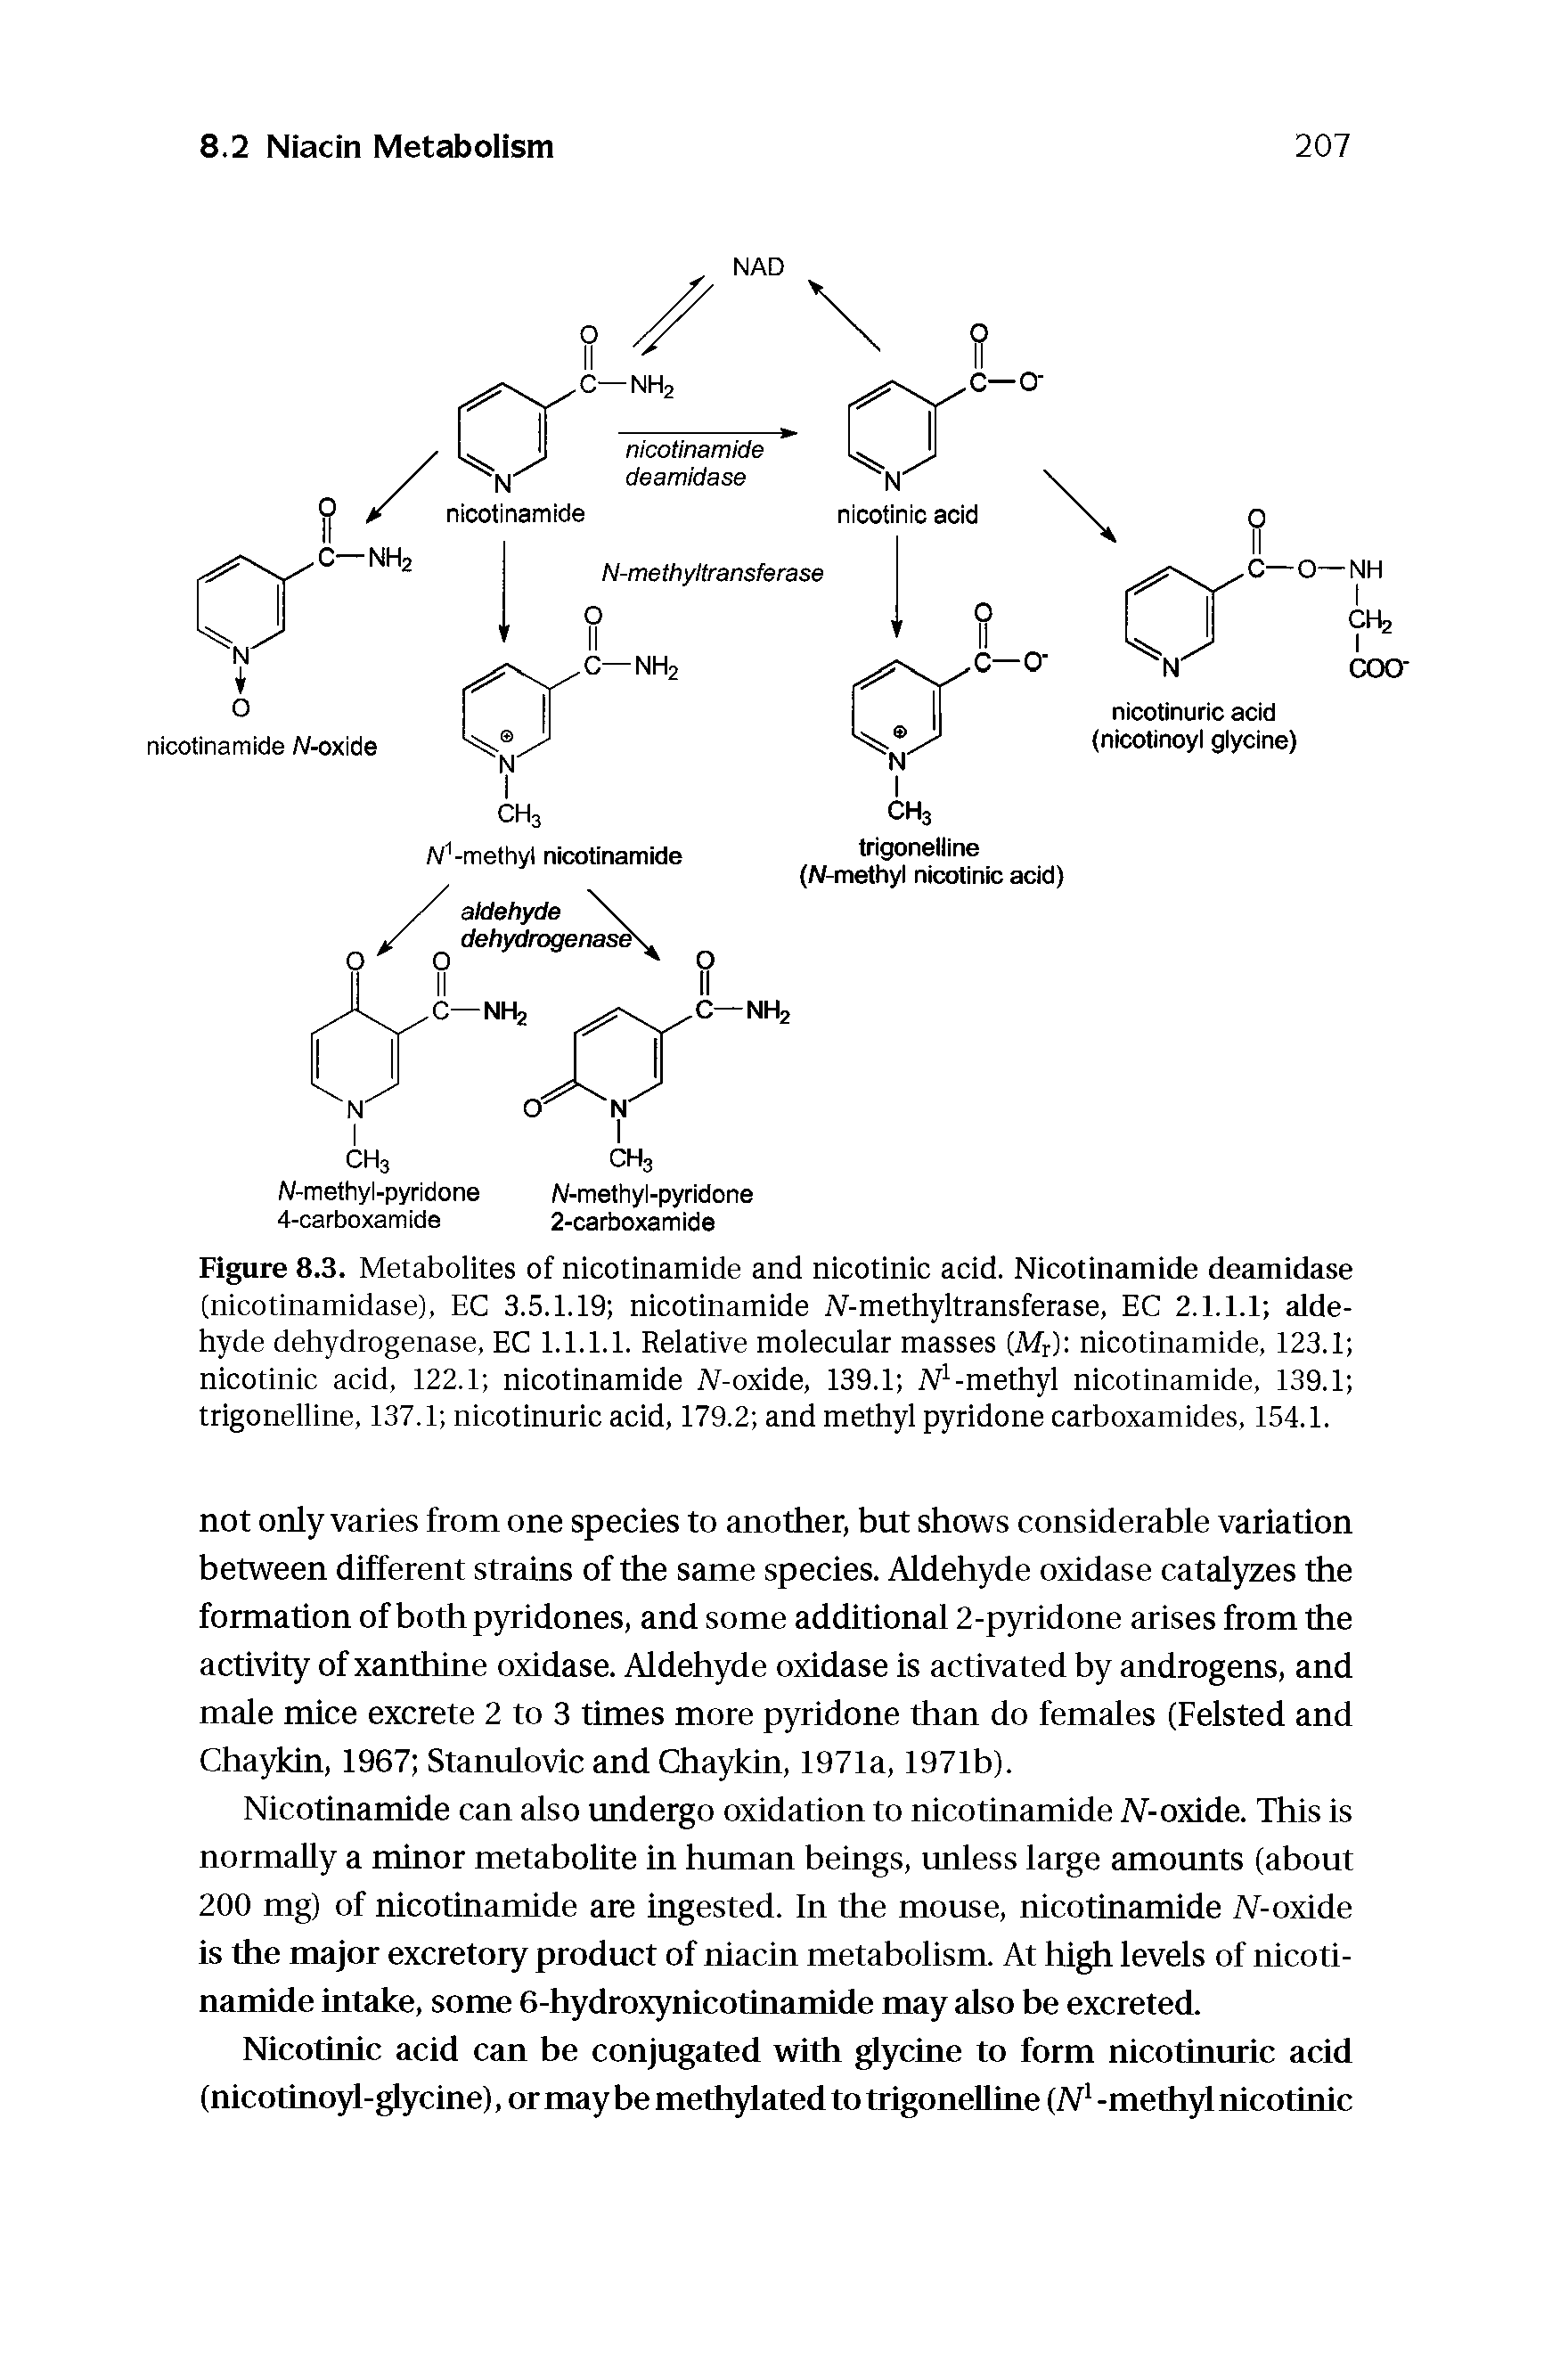 Figure 8.3. Metabolites of nicotinamide and nicotinic acid. Nicotinamide deamidase (nicotinamidase), EC 3.5.1.19 nicotinamide Af-methyltransferase, EC 2.1.1.1 aldehyde dehydrogenase, EC 1.1.1.1. Relative molecular masses (Mr) nicotinamide, 123.1 nicotinic acid, 122.1 nicotinamide JV-oxide, 139.1 Af -methyl nicotinamide, 139.1 trigonelline, 137.1 nicotinuric acid, 179.2 and methyl pyridone carboxamides, 154.1.